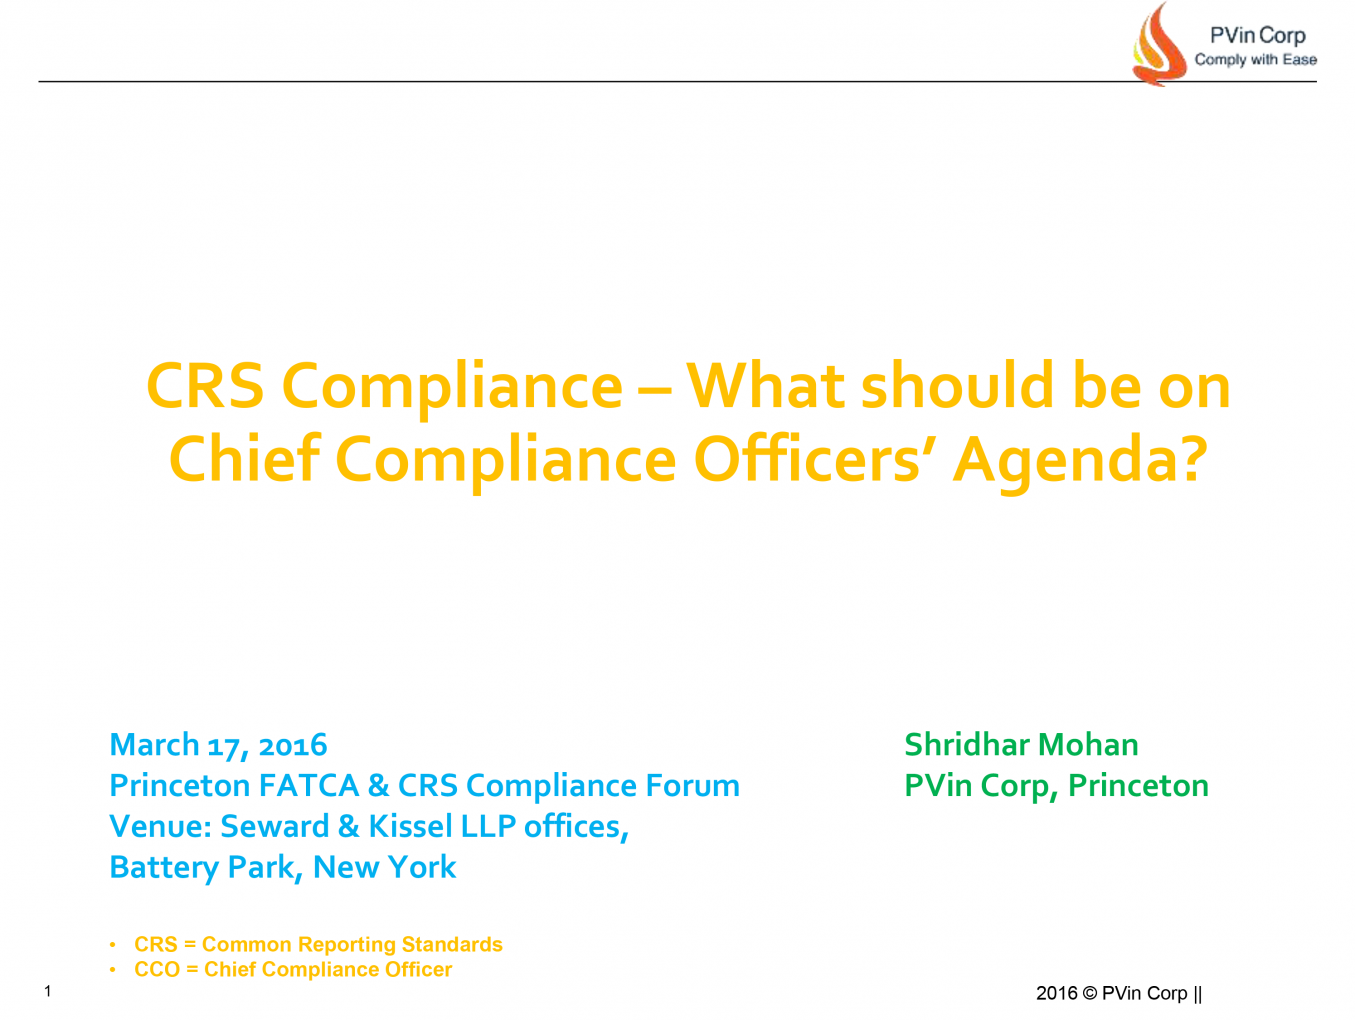 NYC FATCA CRS Forum - CCO Agenda Presentation